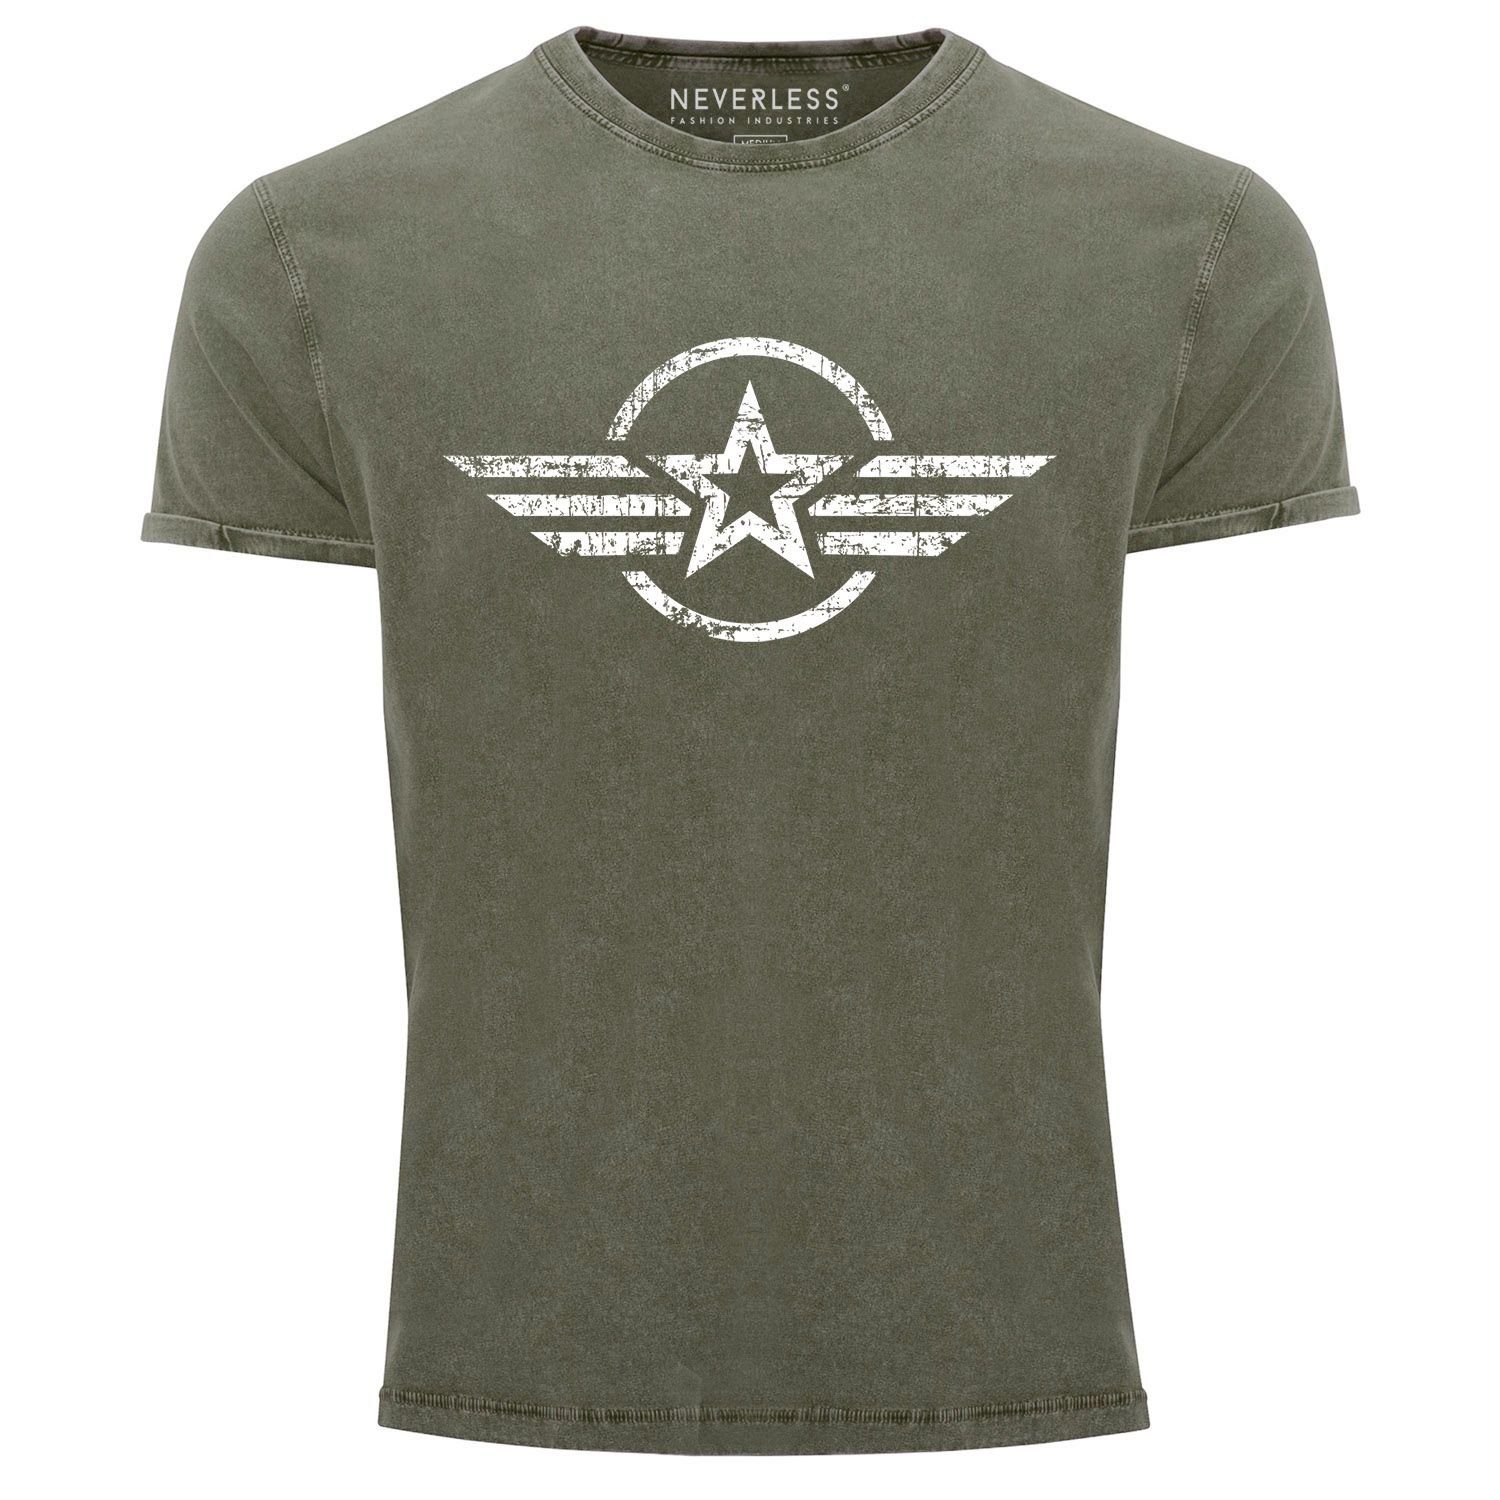 Neverless Print-Shirt Herren Vintage Shirt Airforce Stern Army Military Aufdruck Printshirt T-Shirt Aufdruck Used Look Slim Fit Neverless® mit Print oliv